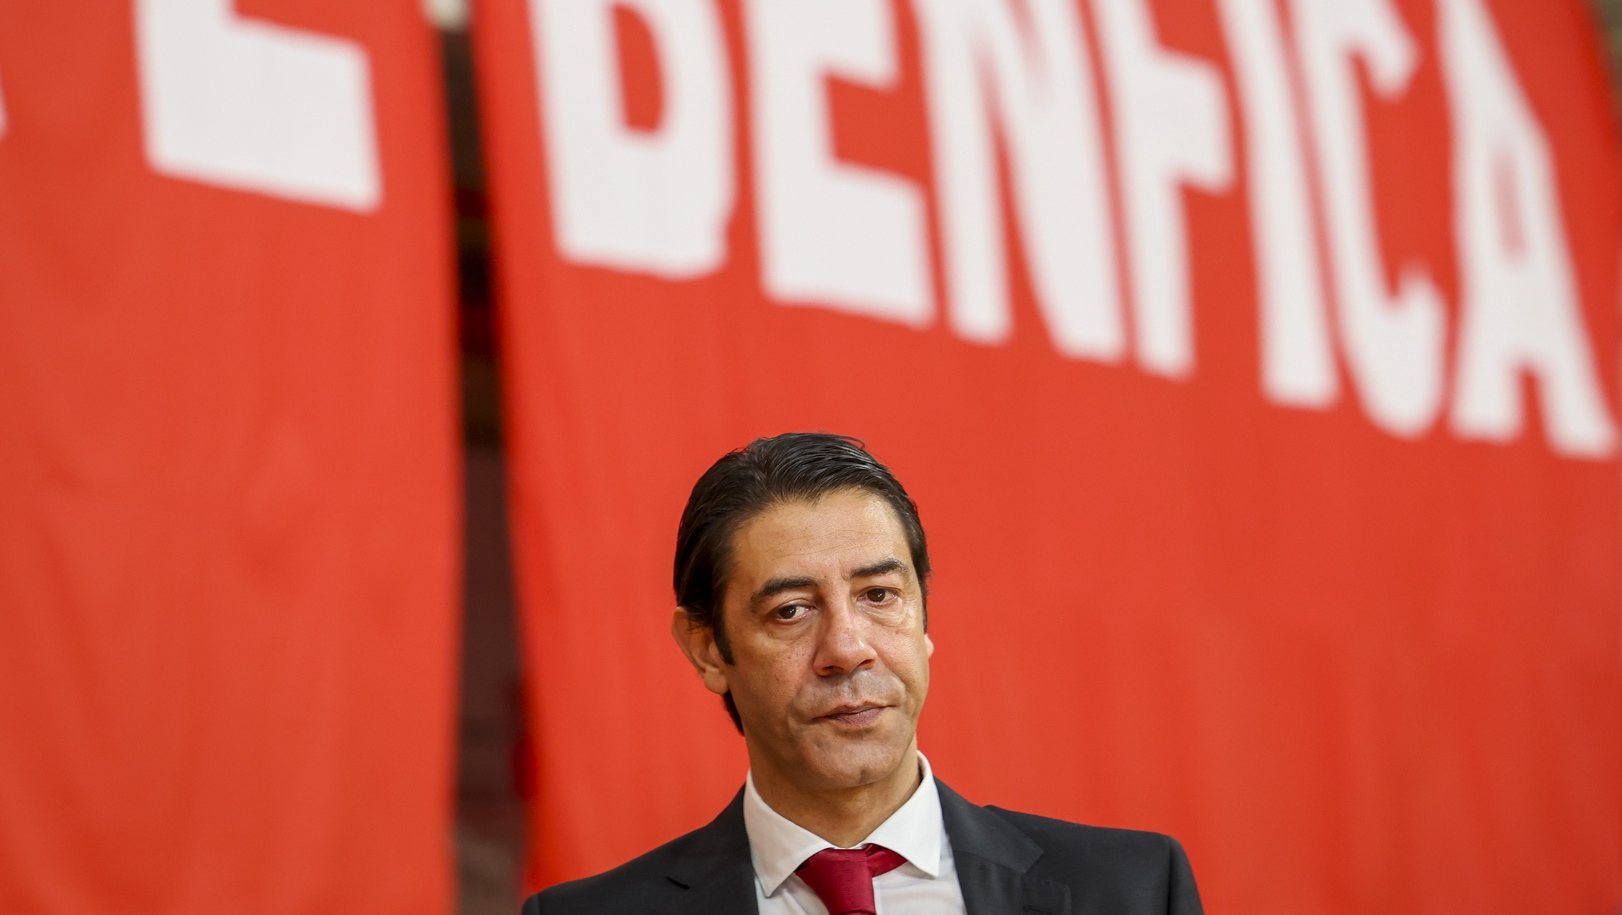 O presidente do Benfica, Rui Costa, assiste ao quinto jogo da final do playoff do Campeonato Nacional, realizado no pavilhão da Luz, em Lisboa, 06 de maio de 2023. JOSÉ SENA GOULÃO/LUSA